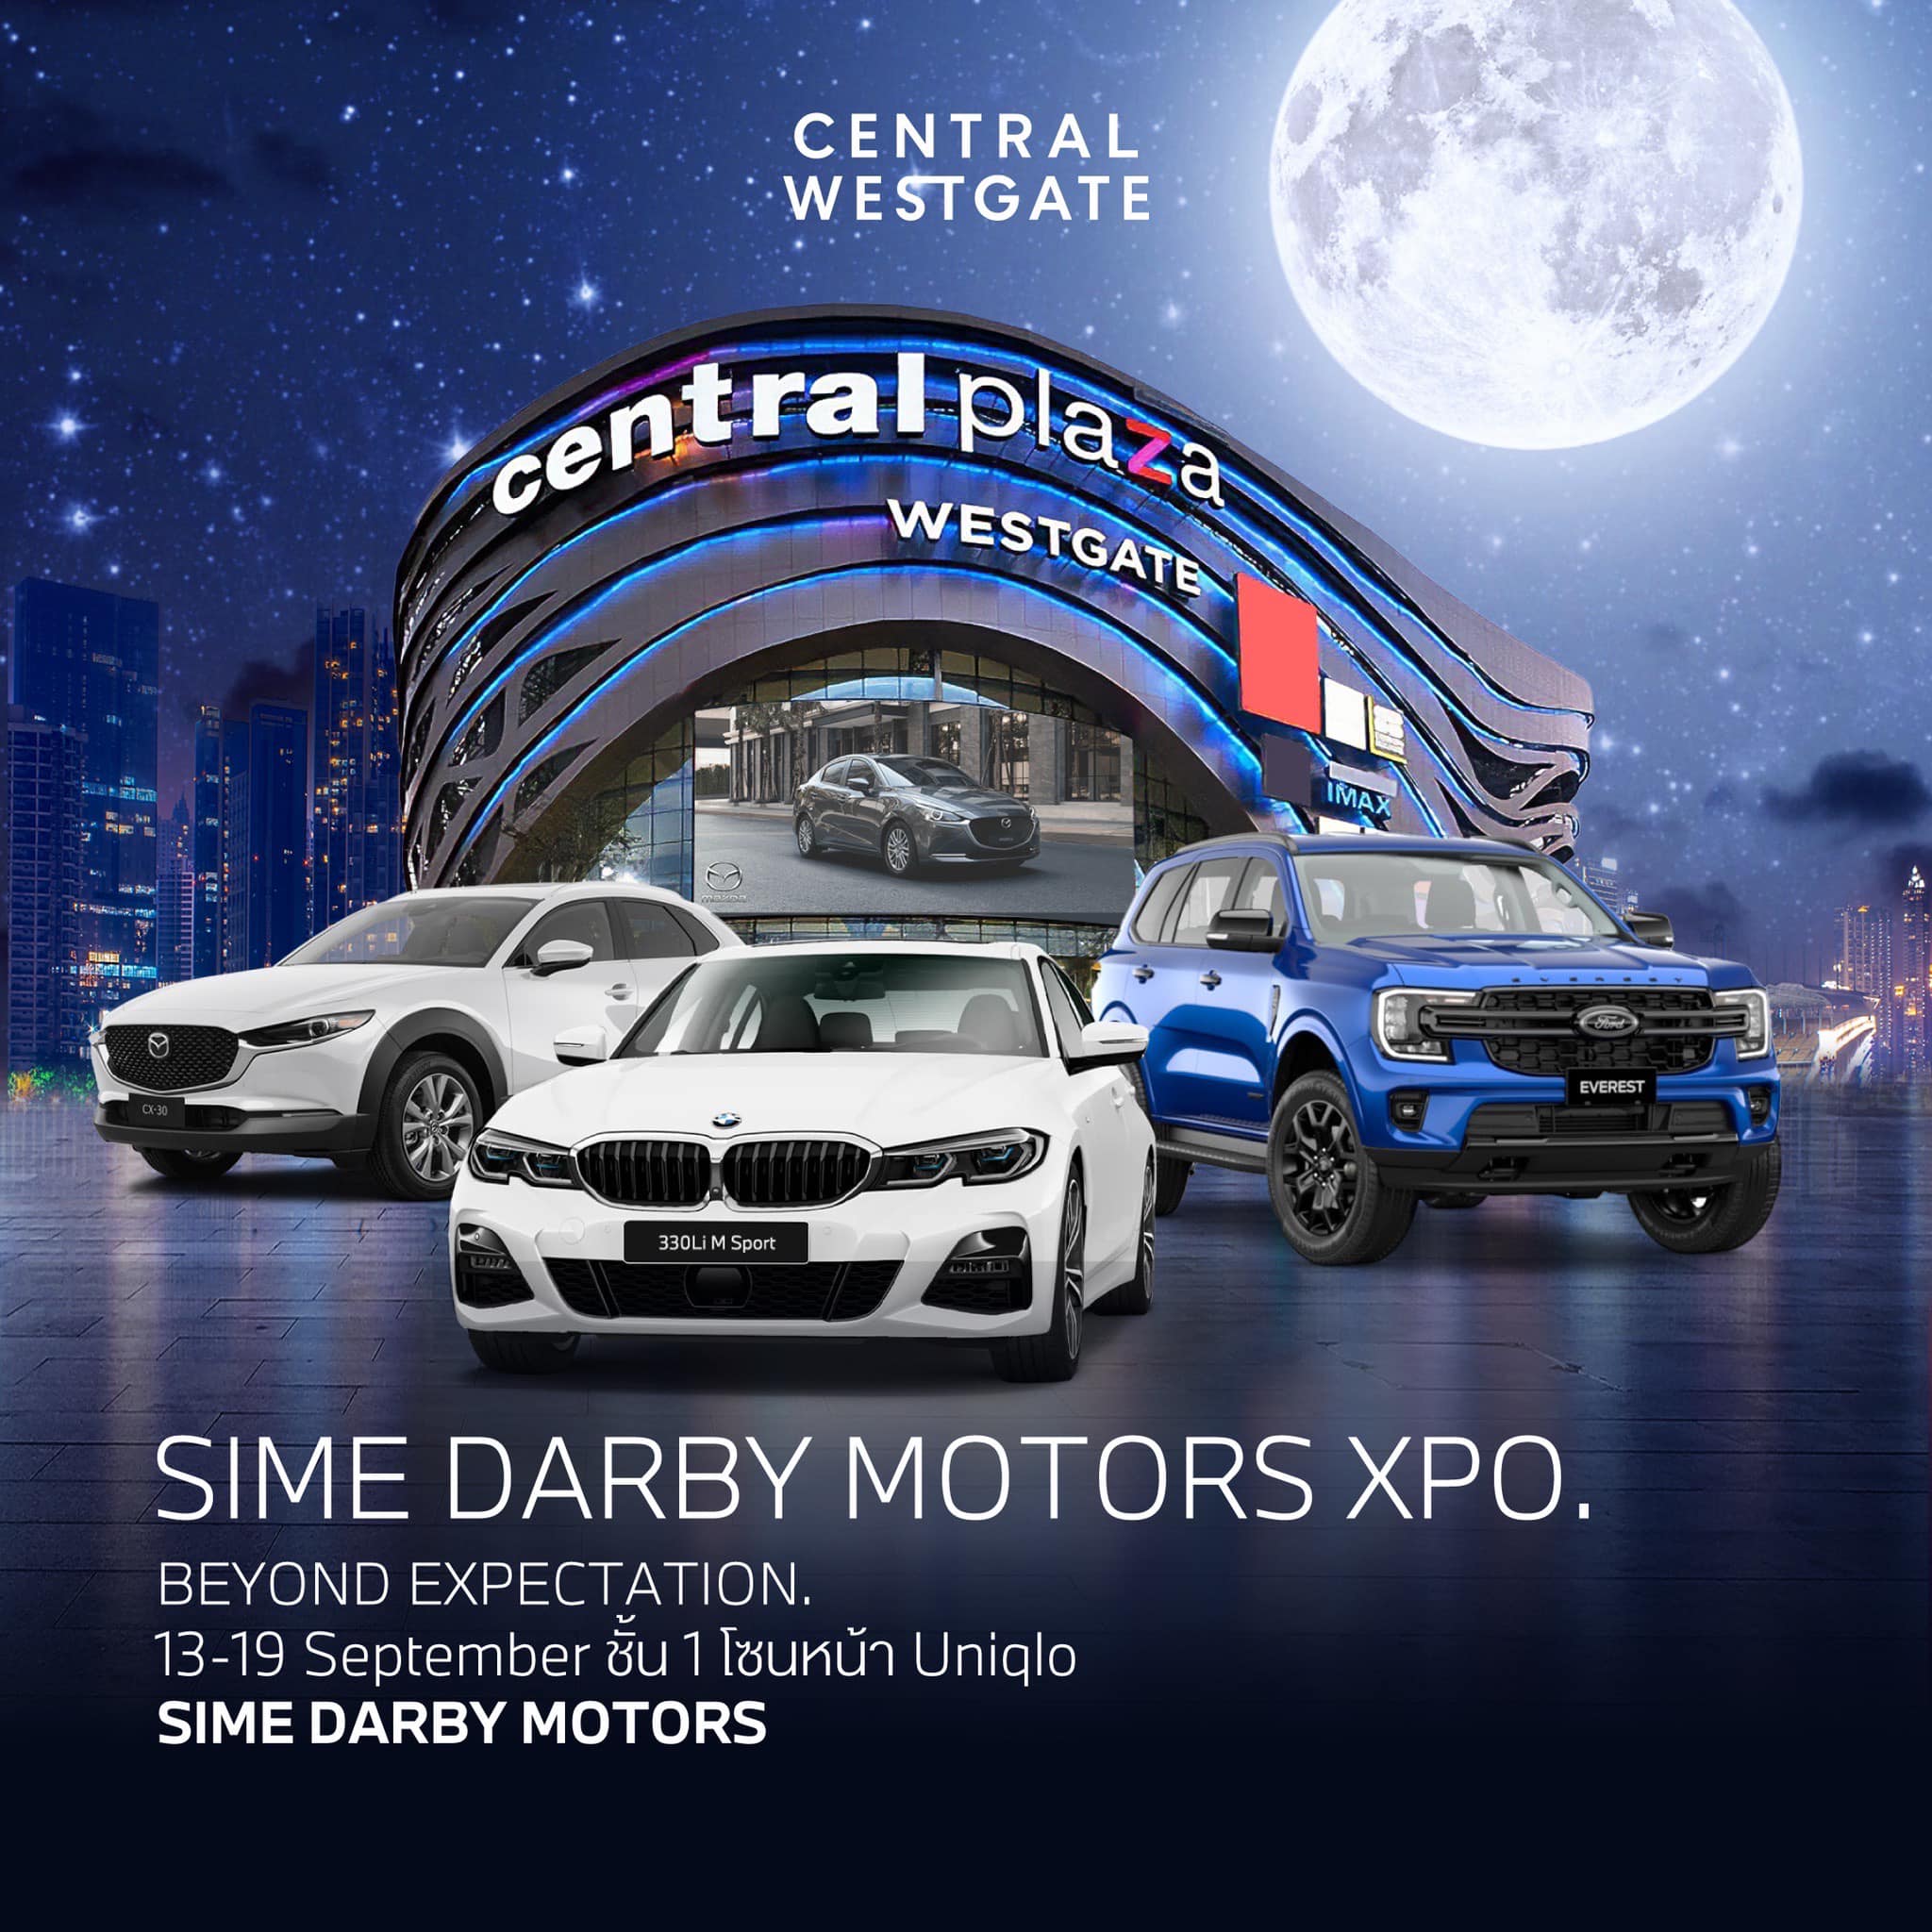 มหกรรมจัดแสดงรถยนต์ผู้เป็นตำนาน ‘Sime Darby Motors Xpo’ 